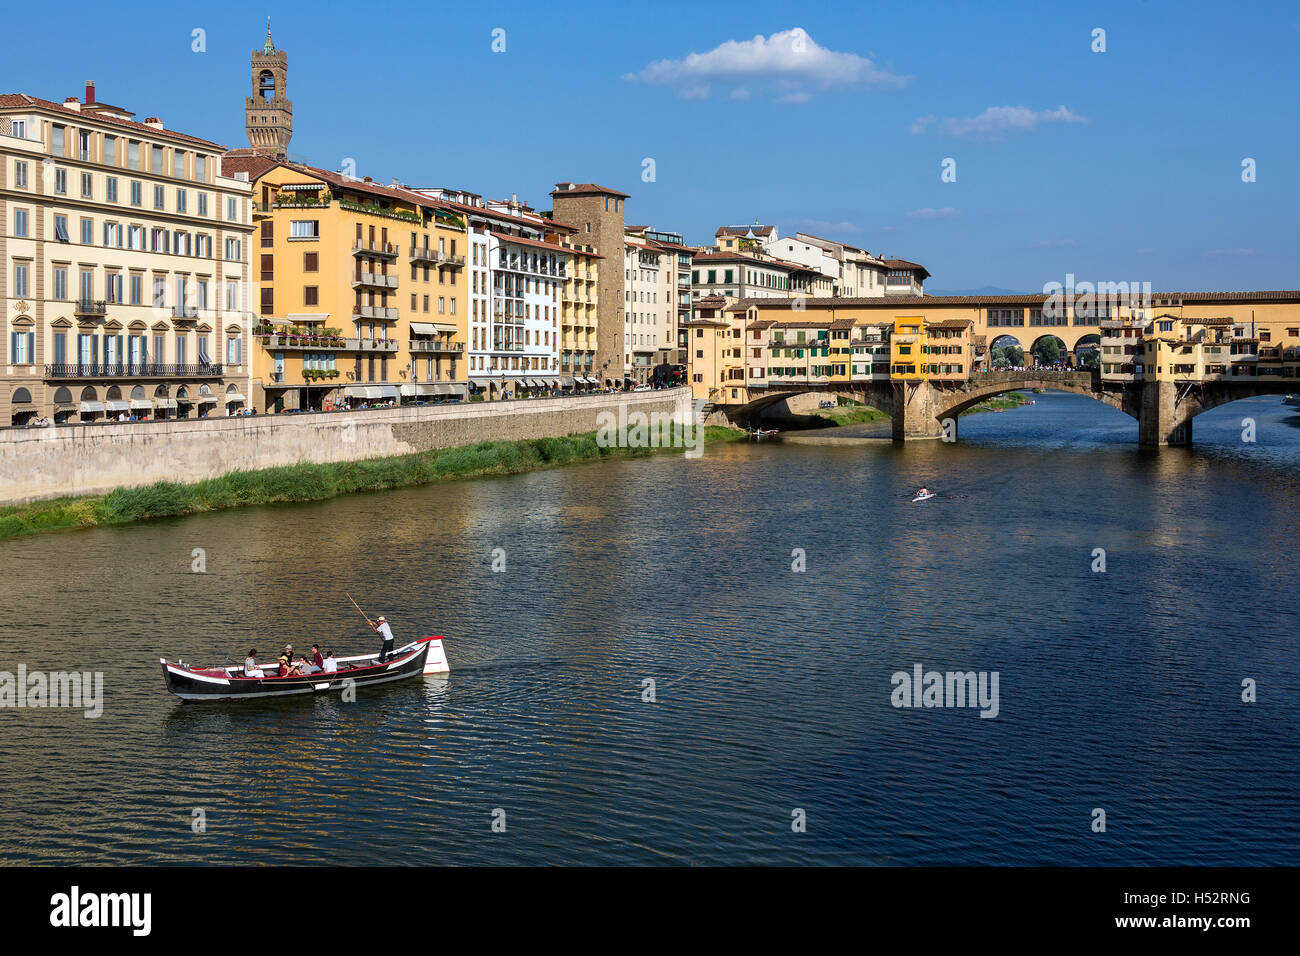 Florenz, Italien - The Ponte Vecchio (alte Brücke] ist eine mittelalterliche Steinbrücke über den Fluss Arno. Stockfoto